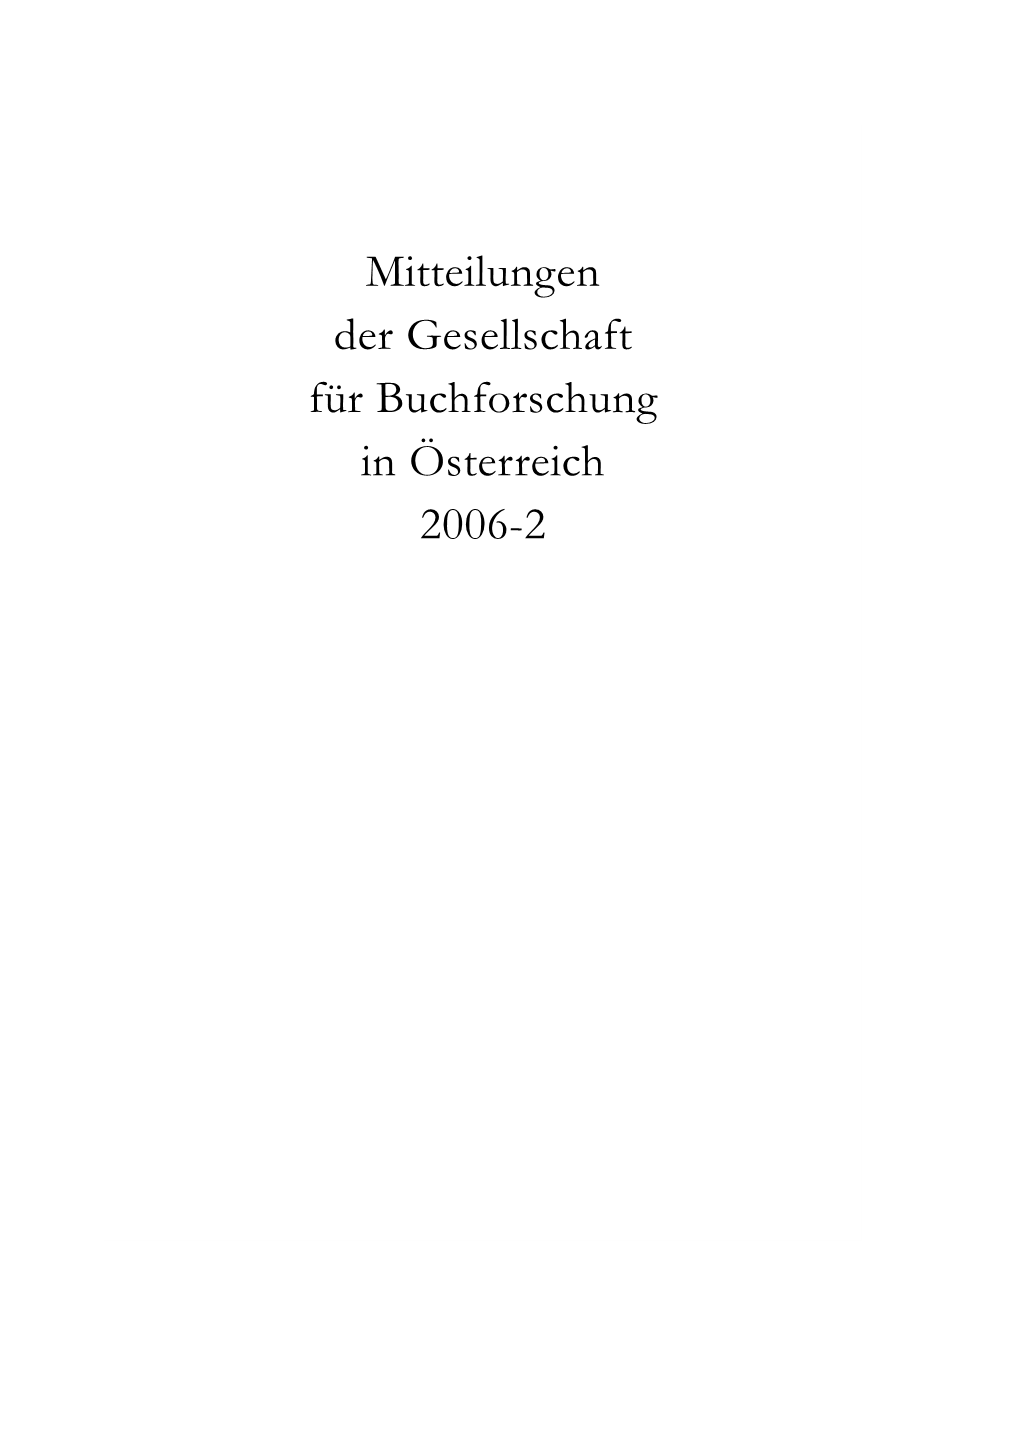 Mitteilungen Der Gesellschaft Für Buchforschung in Österreich 2006-2 BUCHFORSCHUNG-2006-2-Neu.Qxd 06.11.2006 9:39 Uhr Seite 2